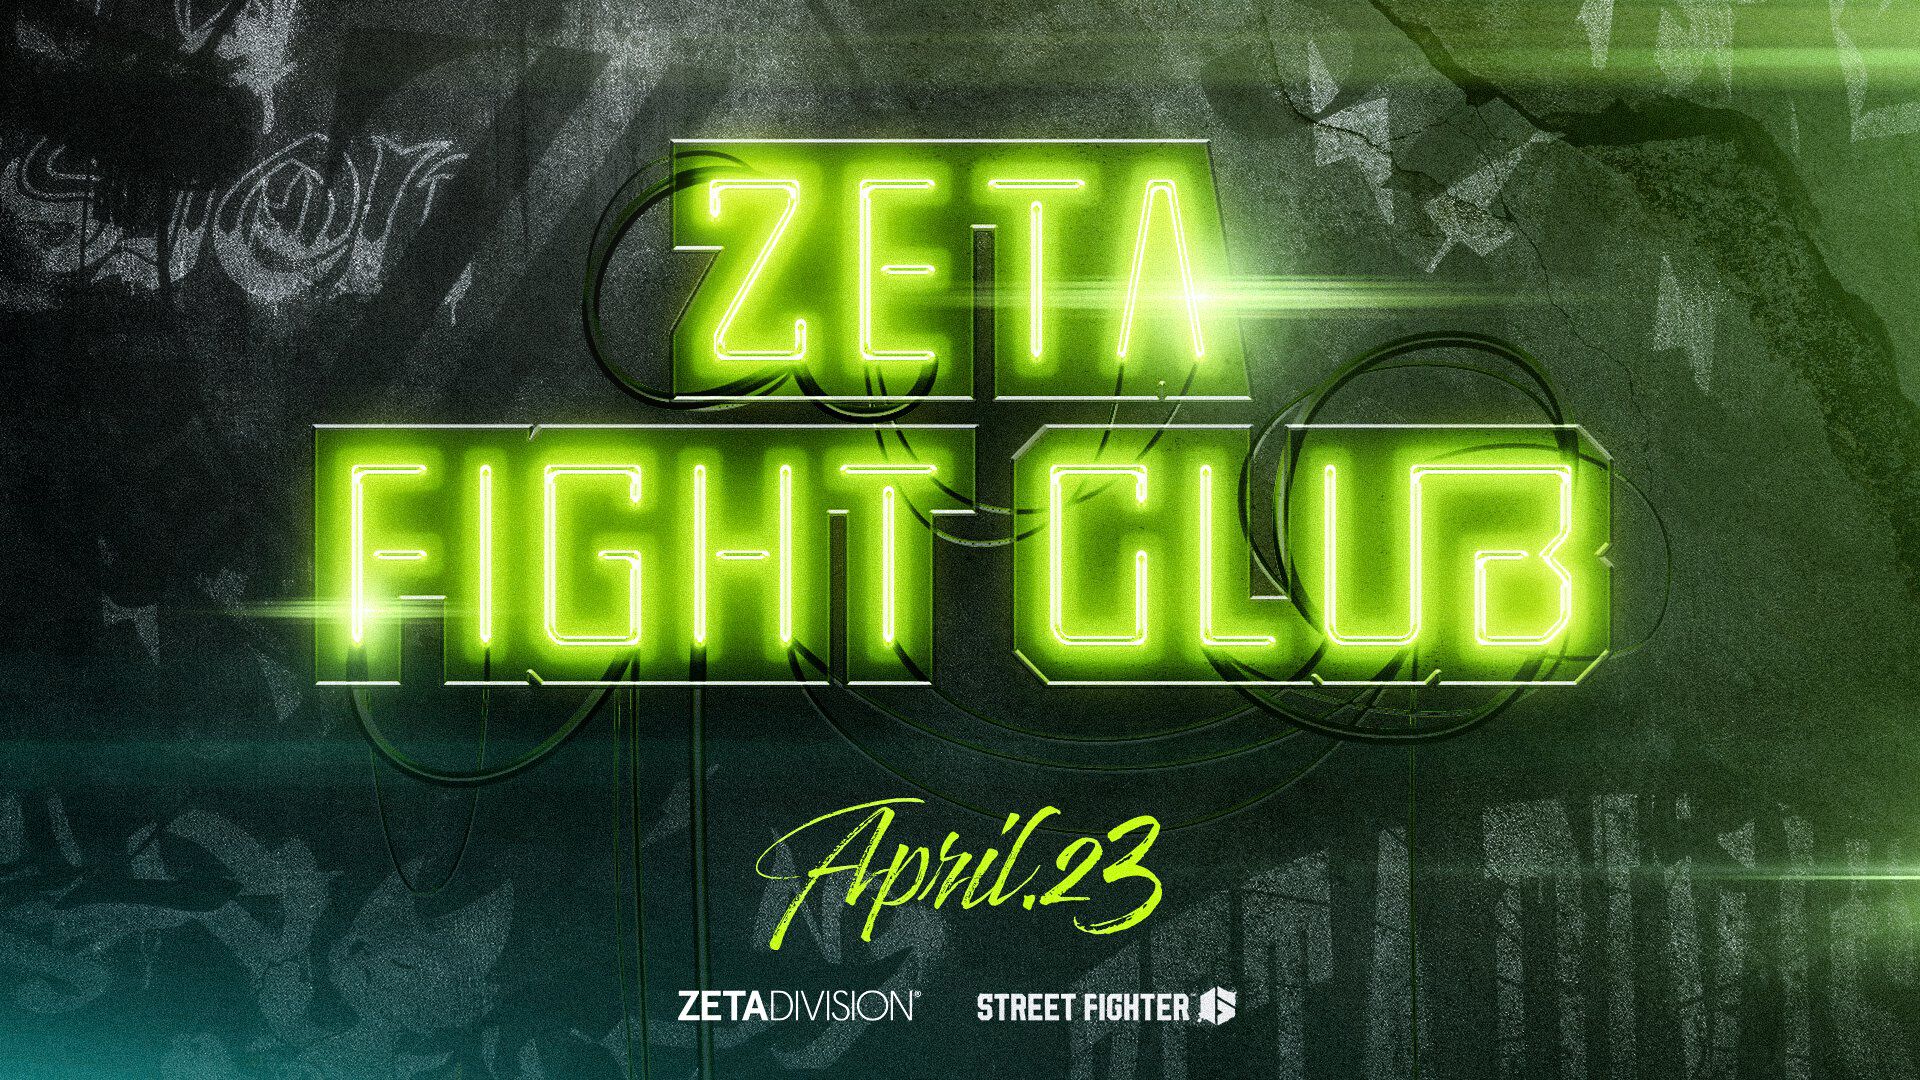 ZETA DIVISIONによる『スト6』対戦会“ZETA FIGHT CLUB”が4月23日開催。よしなま、Zerost、ひぐち、ハイタニ、なるおなど、プロ格ゲーマーや人気ストリーマーが参加